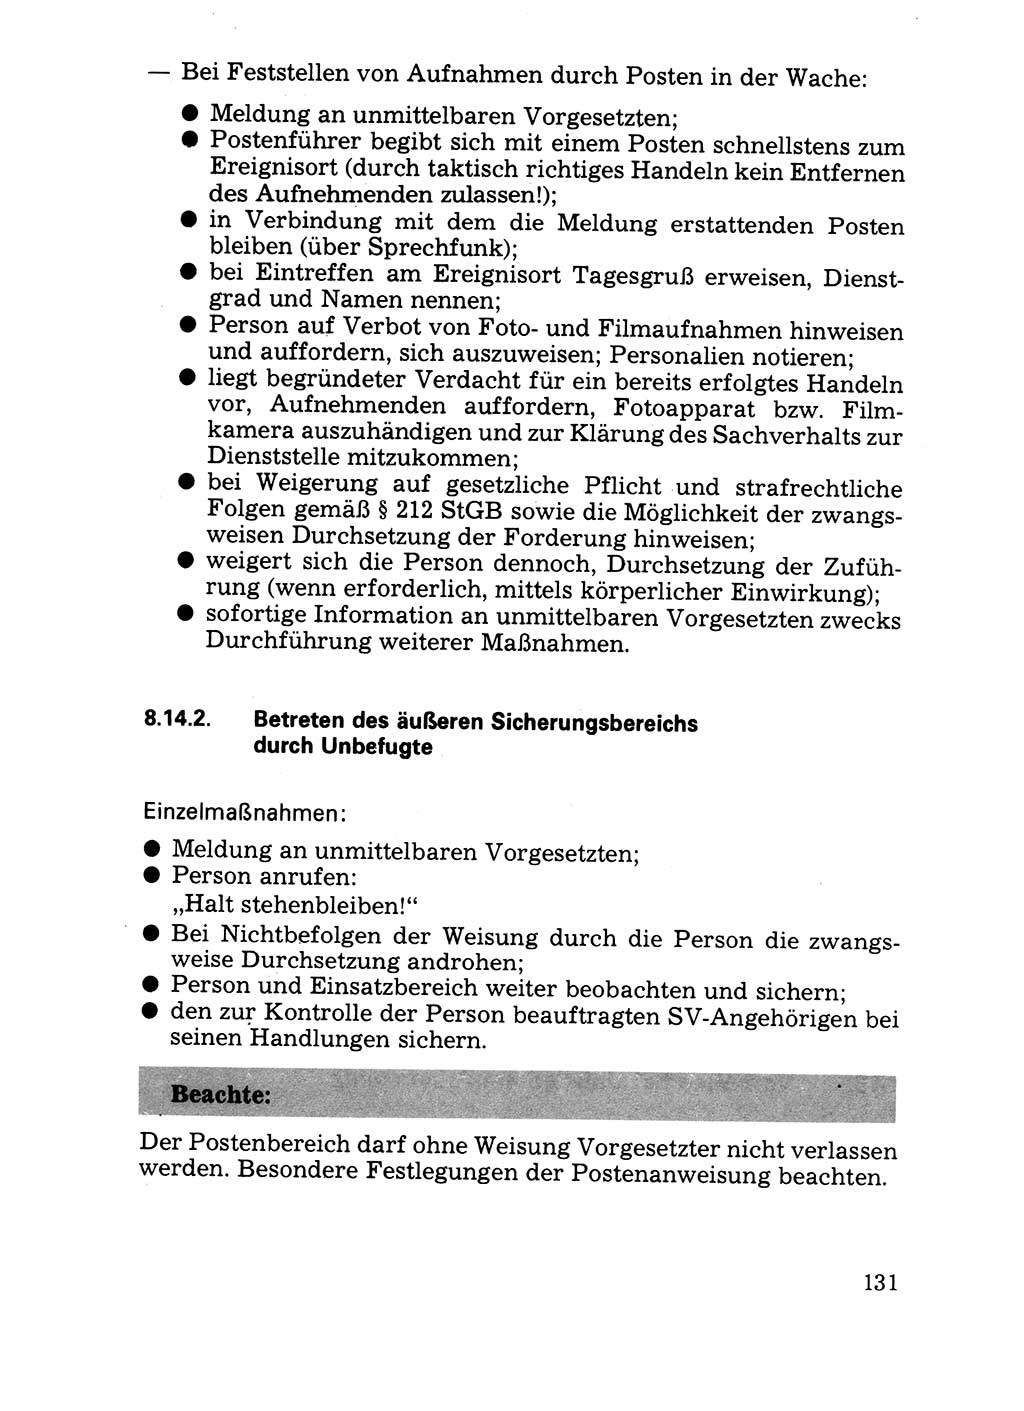 Handbuch für operative Dienste, Abteilung Strafvollzug (SV) [Ministerium des Innern (MdI) Deutsche Demokratische Republik (DDR)] 1981, Seite 131 (Hb. op. D. Abt. SV MdI DDR 1981, S. 131)